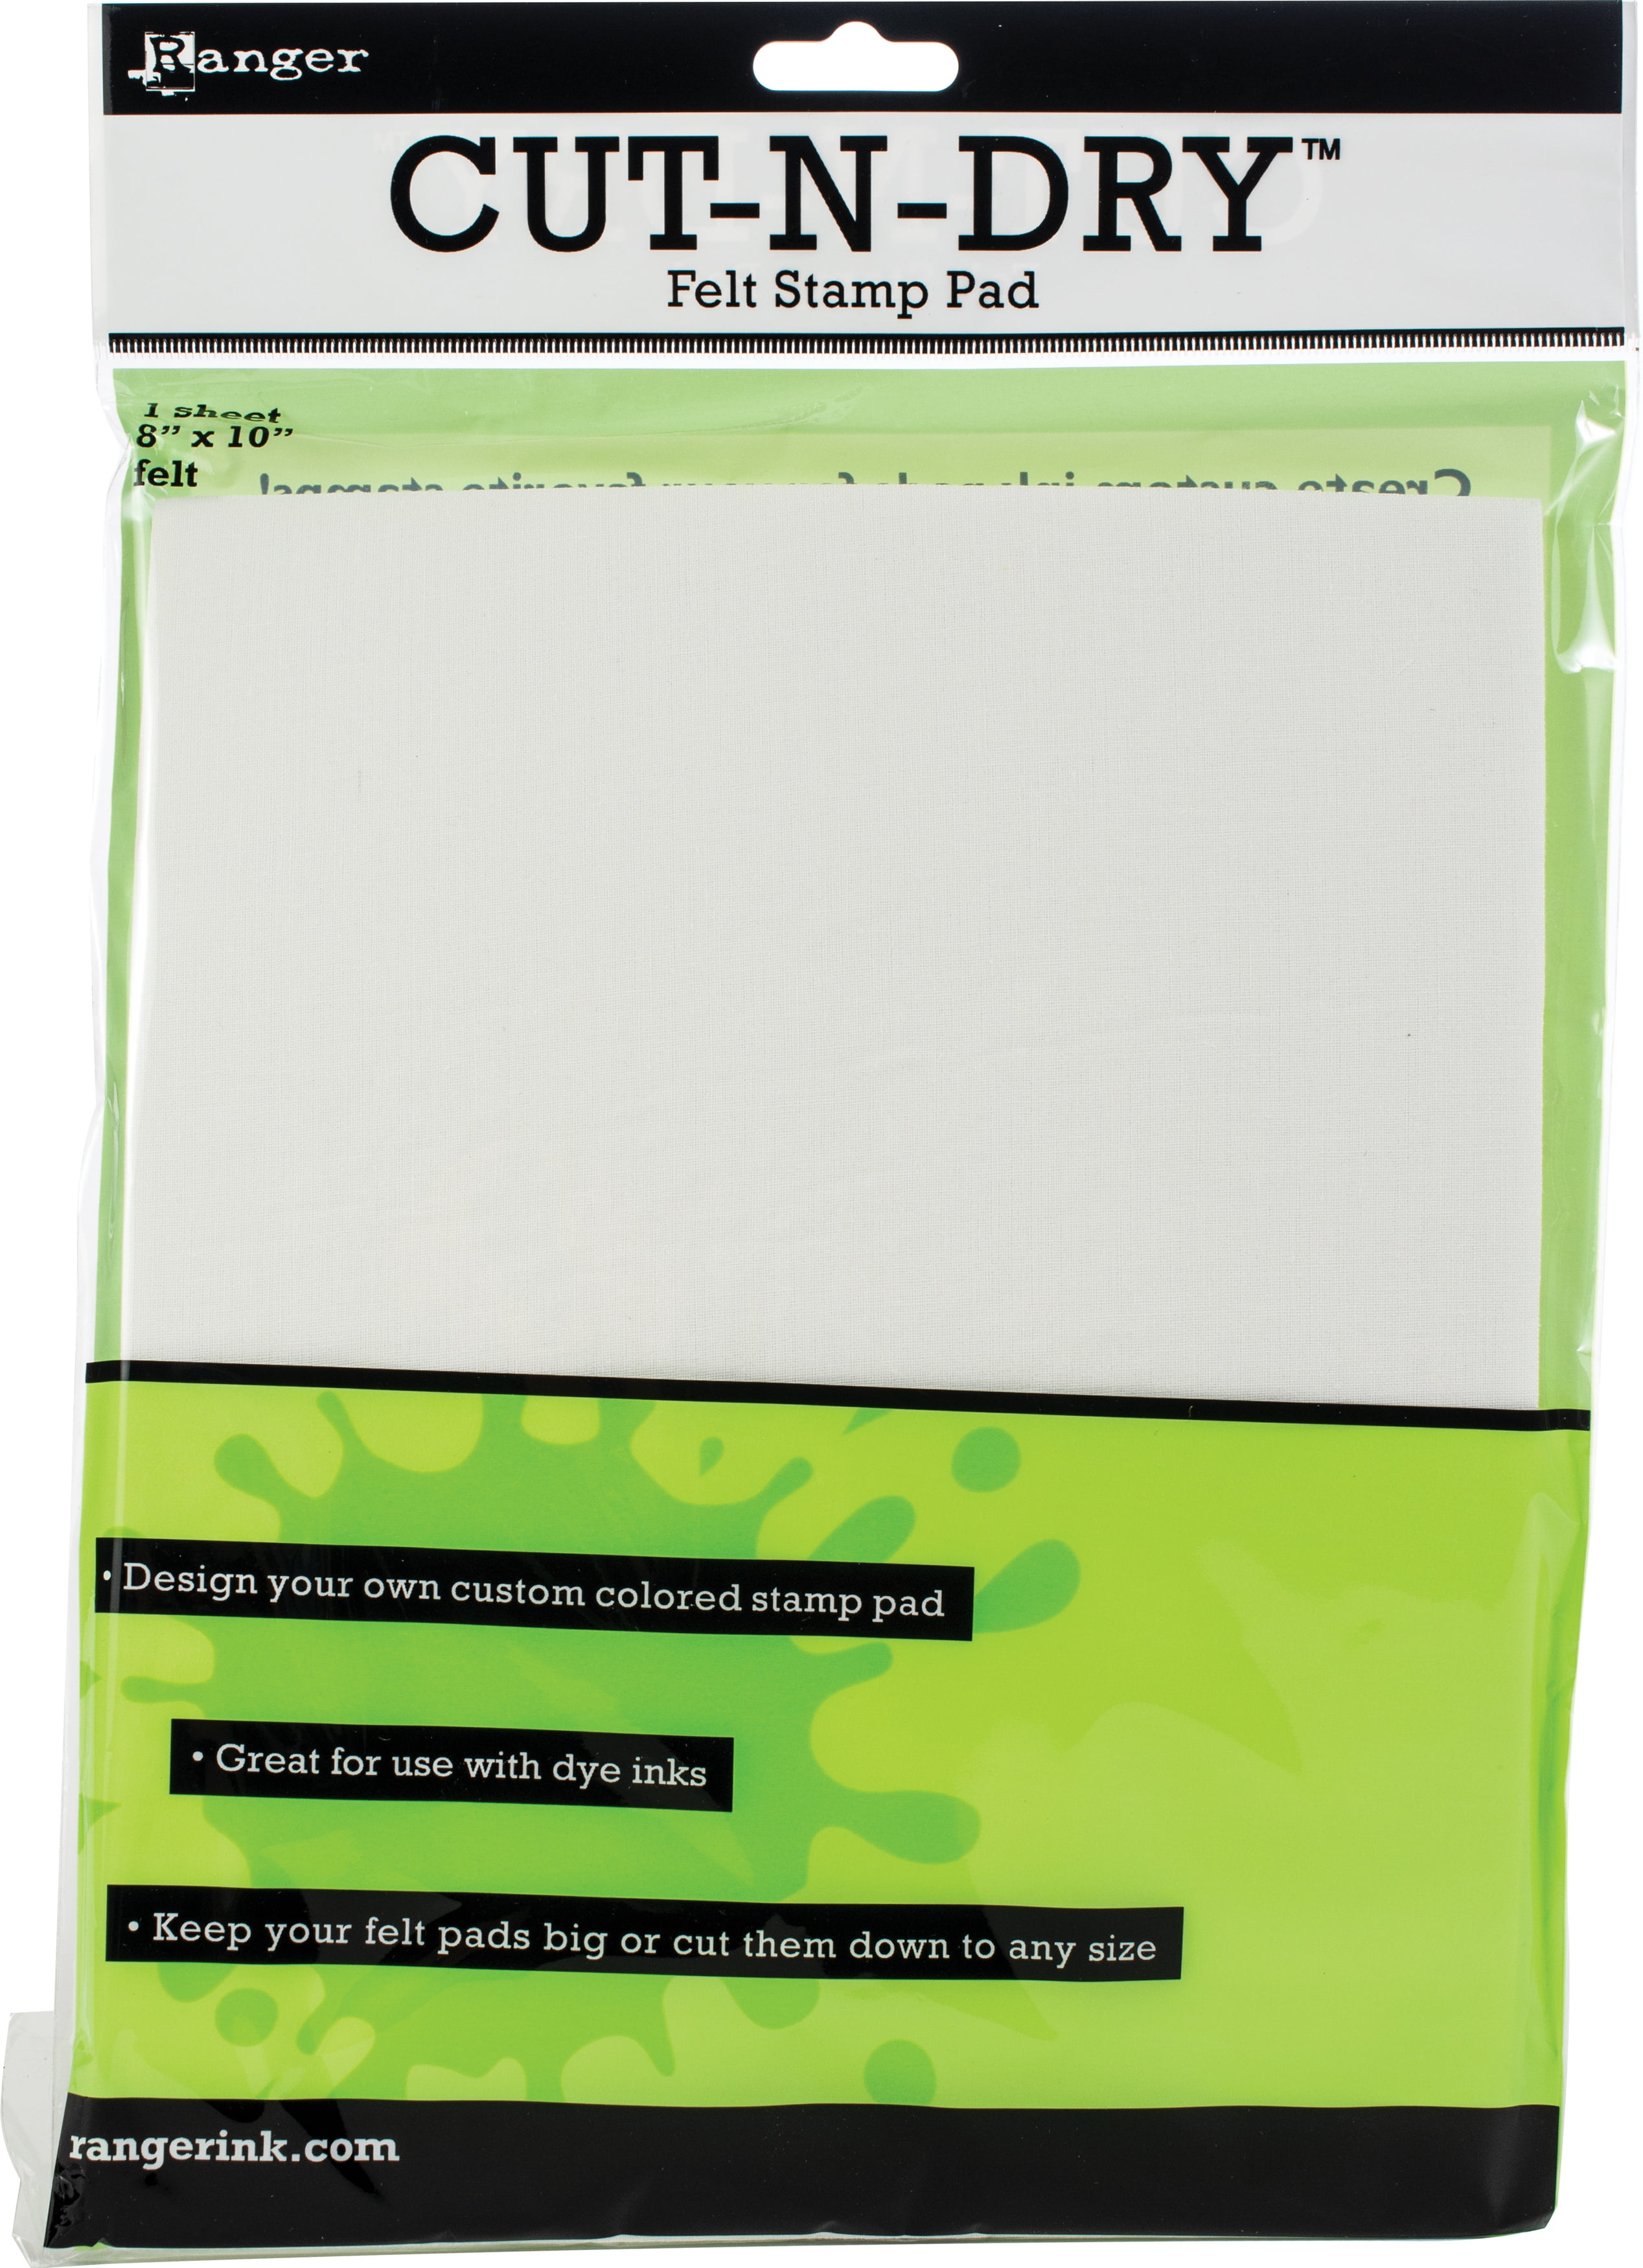 Inkssentials Cut-n-dry stamp pad foam 8" x 10" 